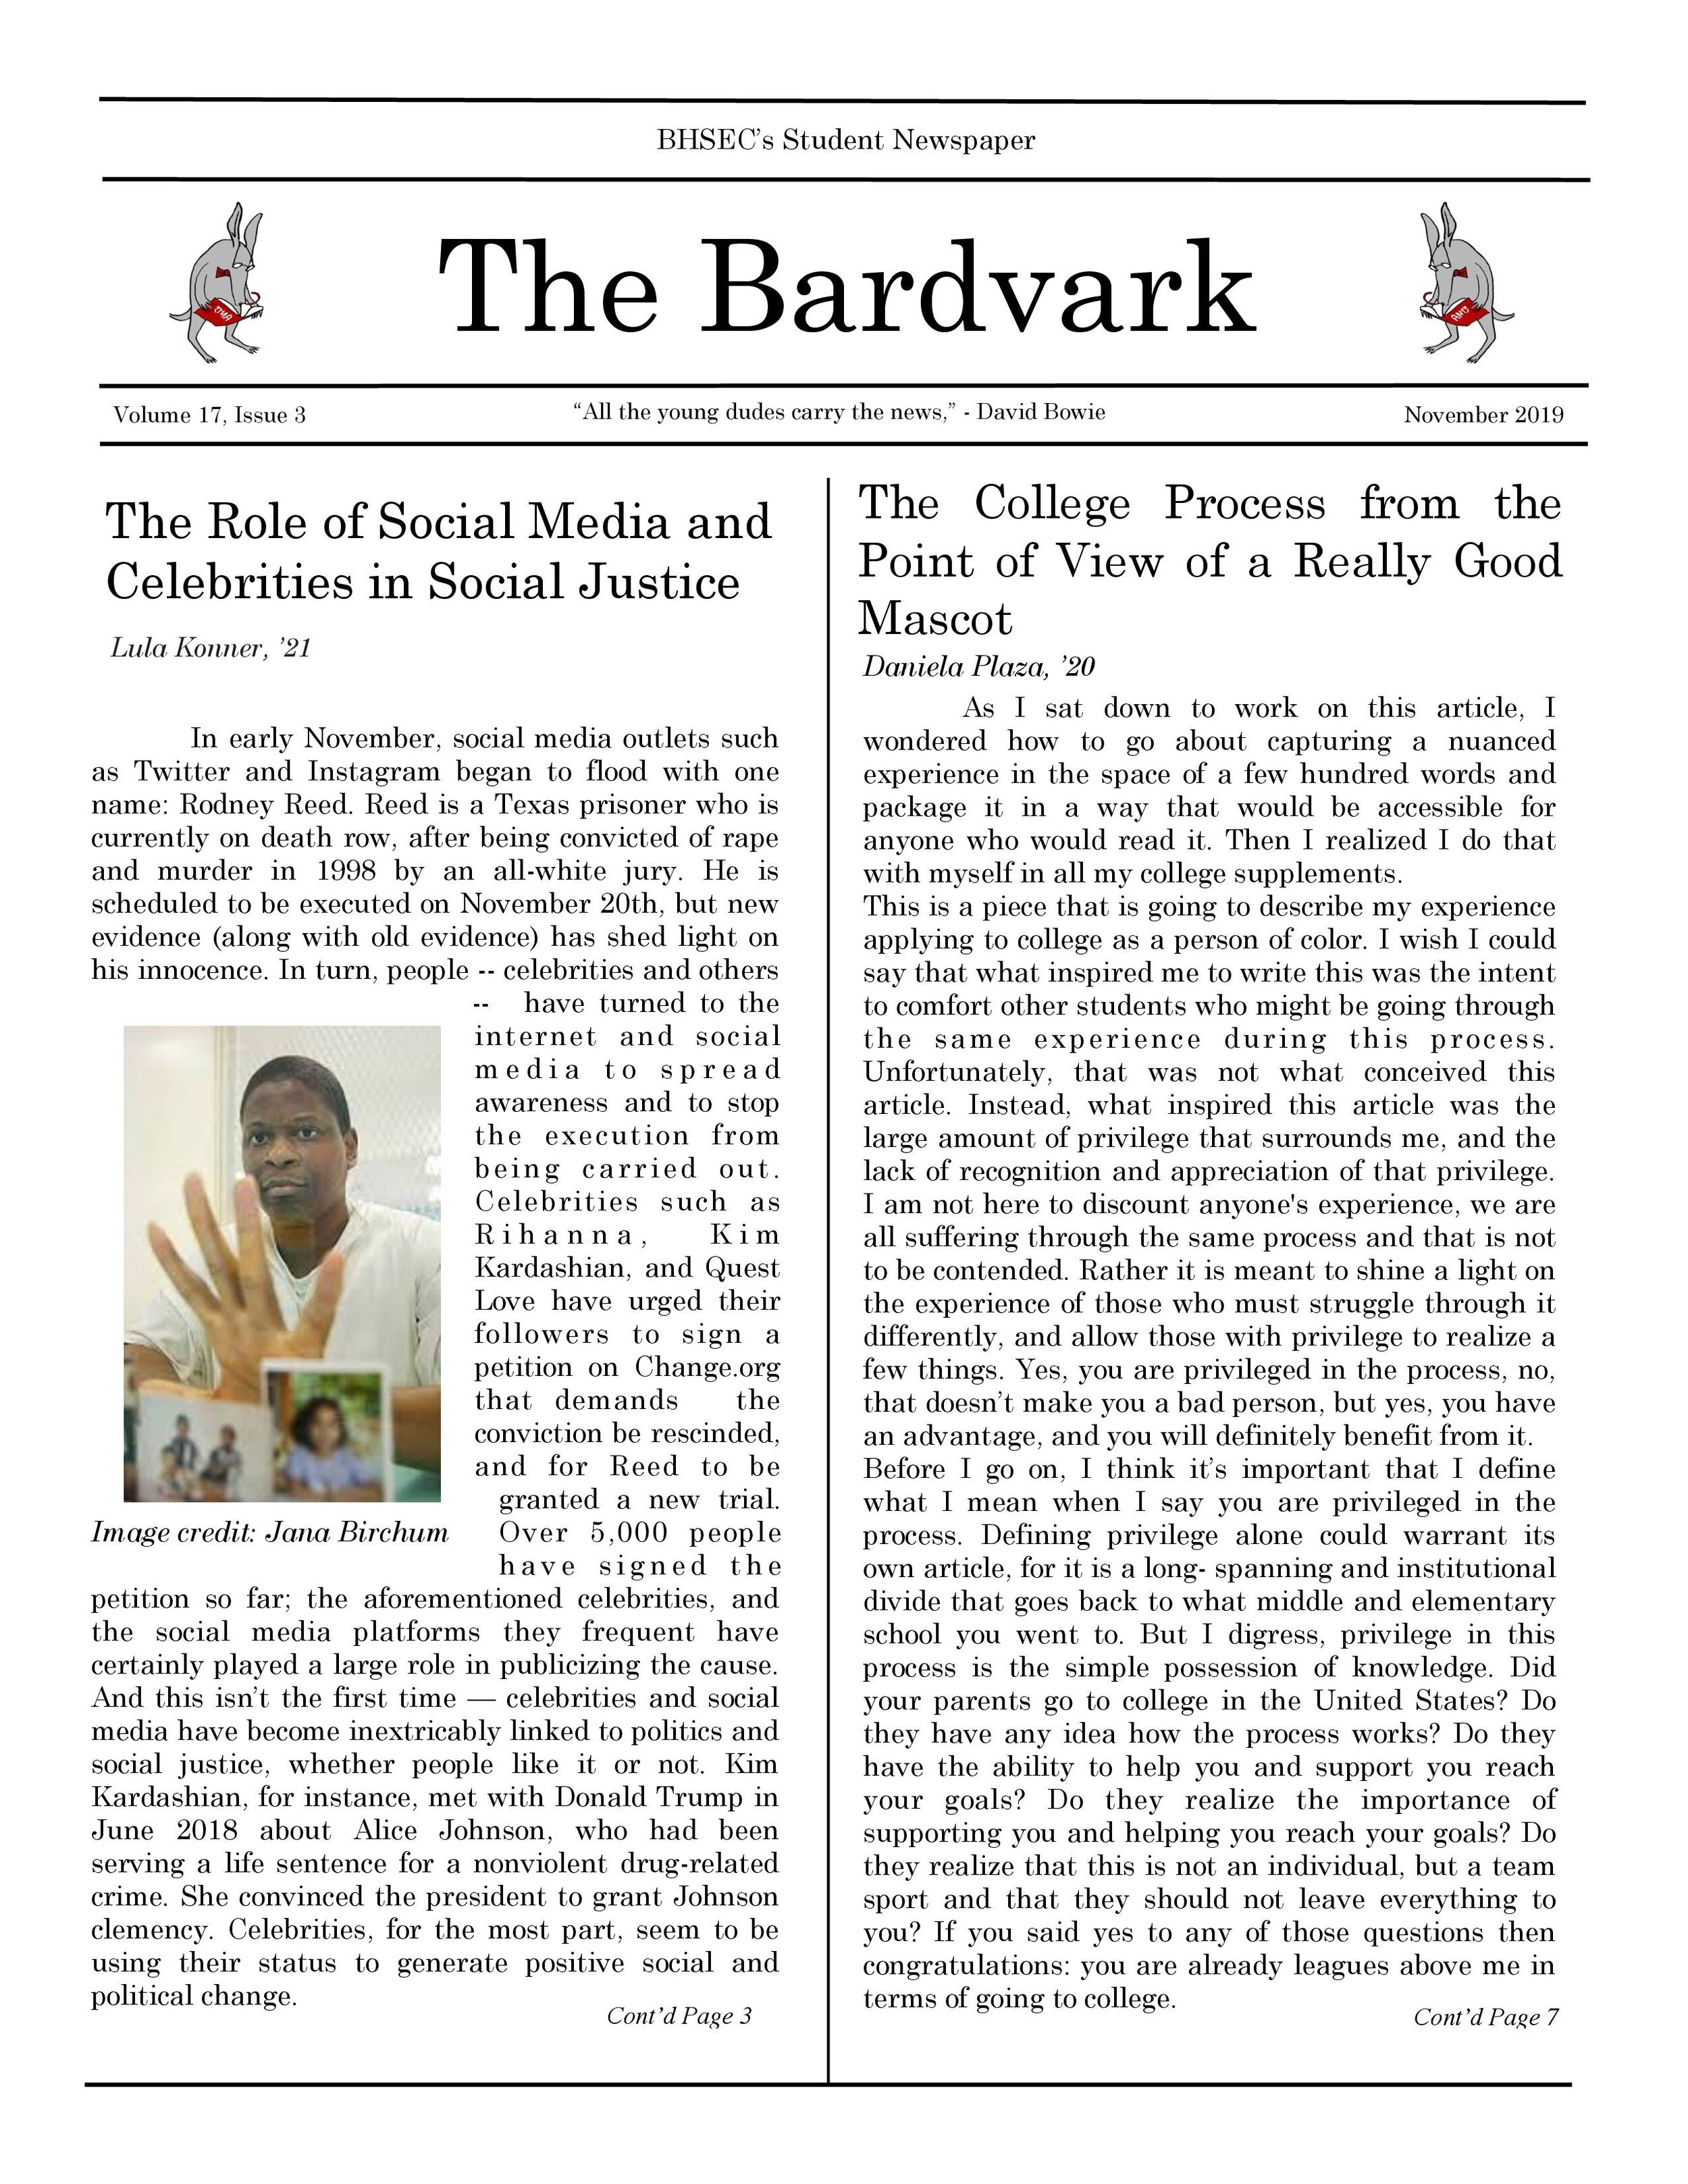 Bardvark Vol 17.3 PDF-1.jpg